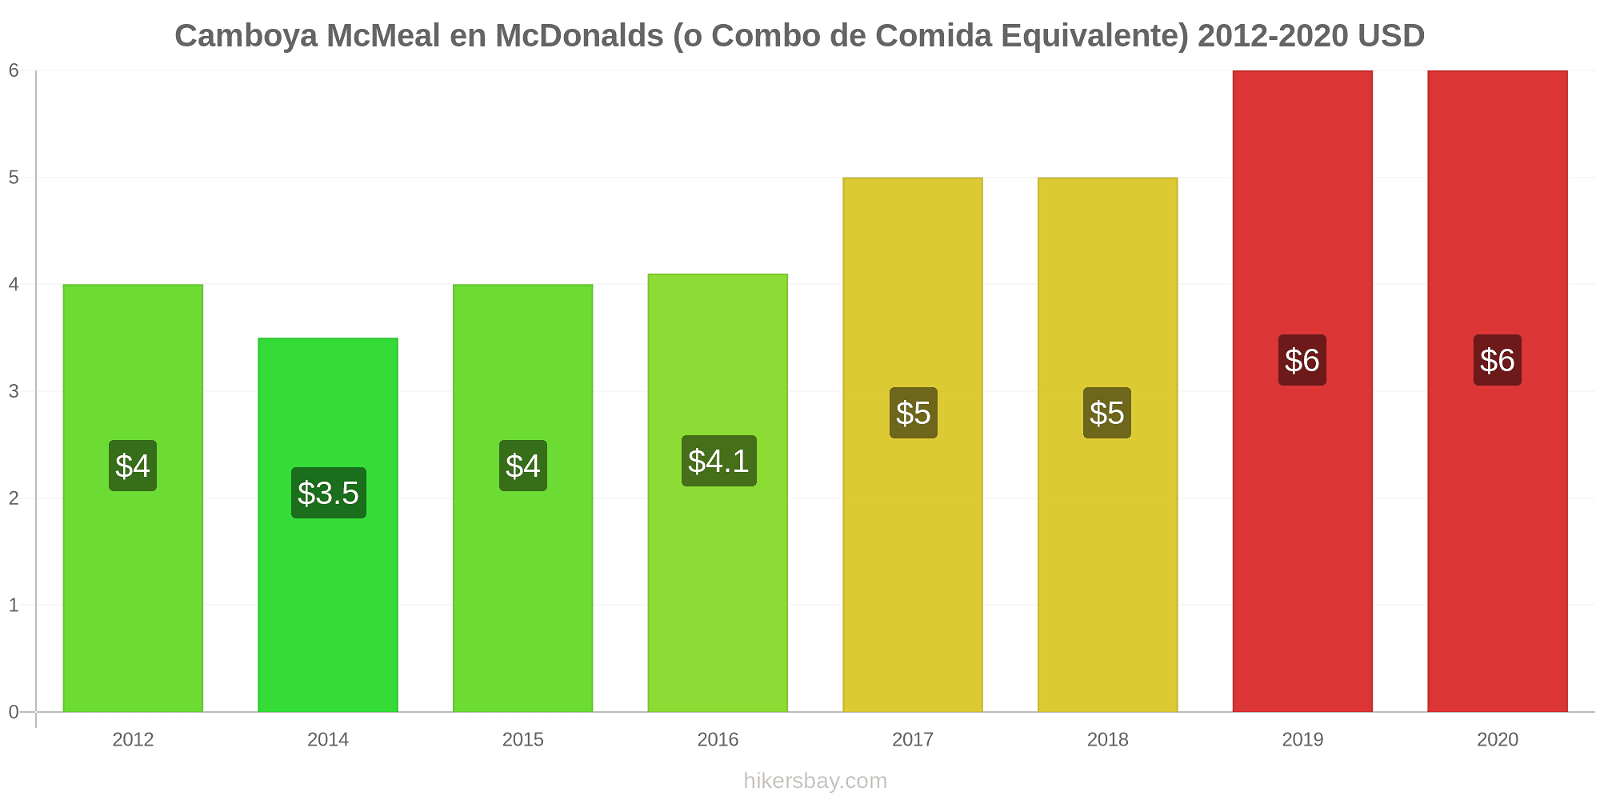 Camboya cambios de precios McMeal en McDonalds (o menú equivalente) hikersbay.com